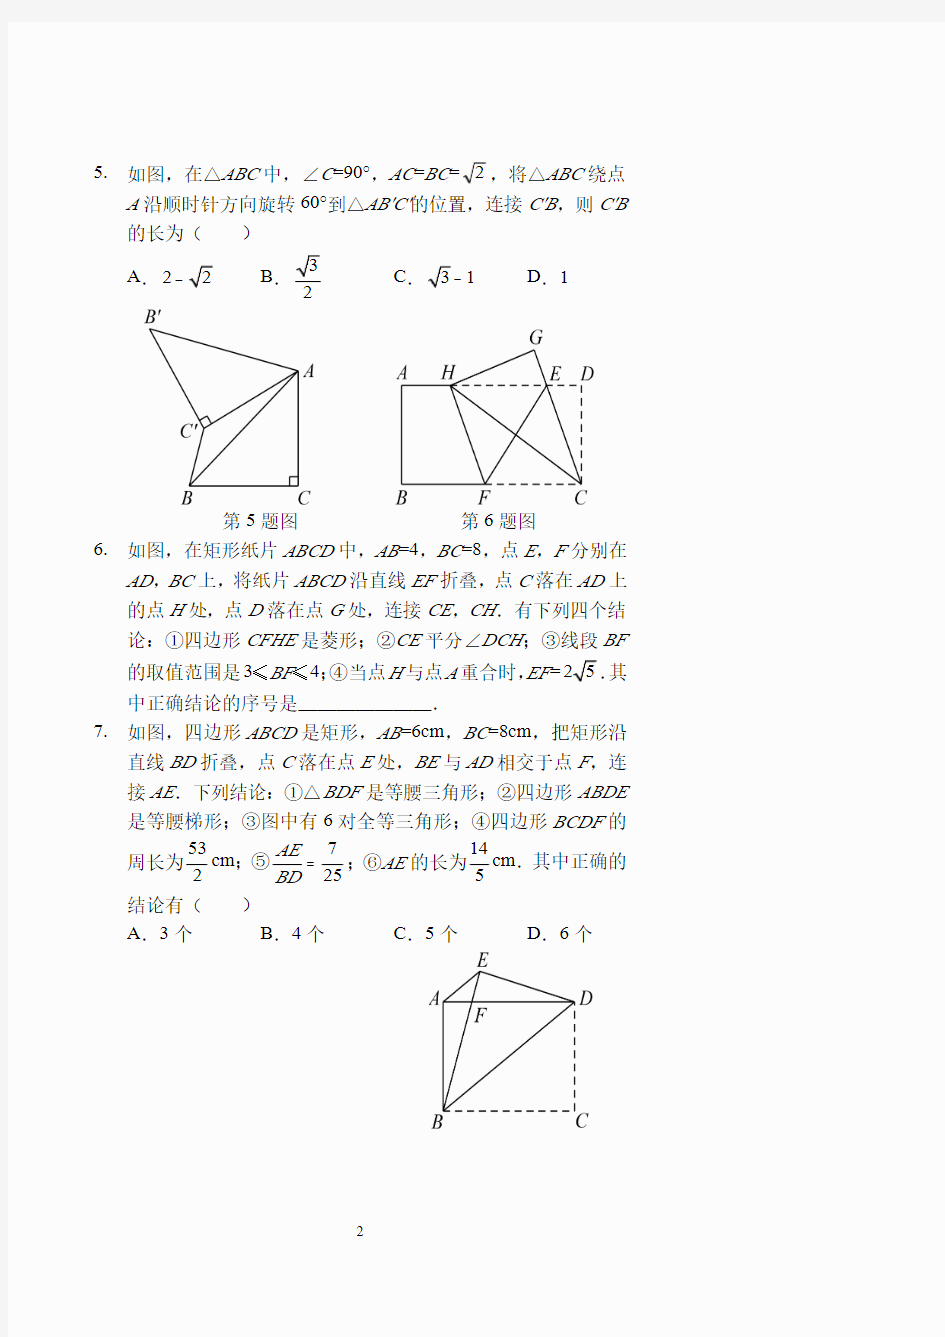 几何专题(二)——旋转与折叠(习题及答案)